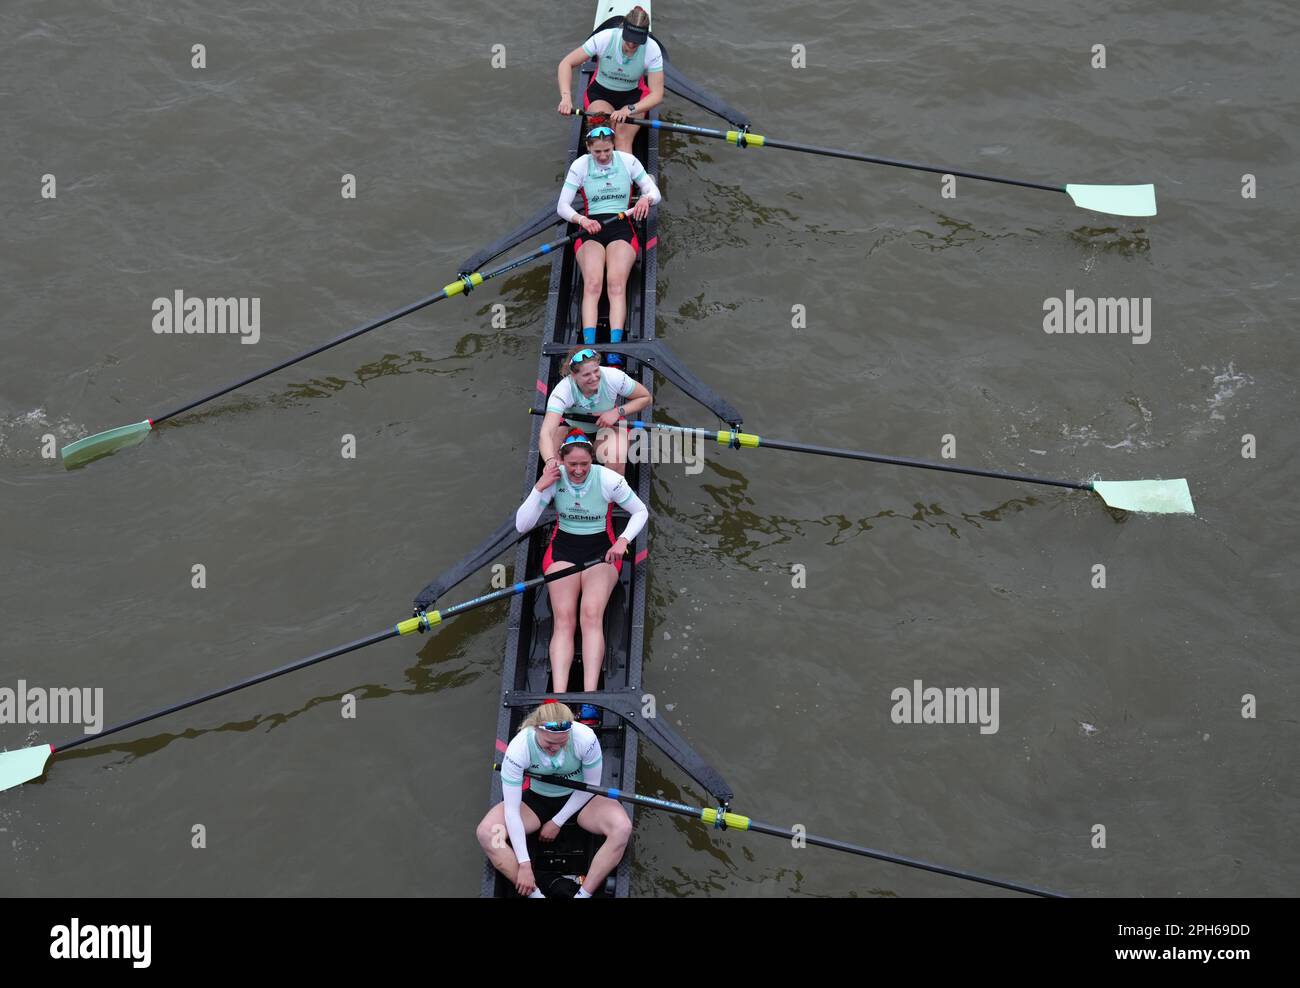 L'equipaggio di Cambridge celebra la vittoria dopo la gara femminile durante la Gemini Boat Race 2023 sul Tamigi, Londra. Data immagine: Domenica 26 marzo 2023. Foto Stock